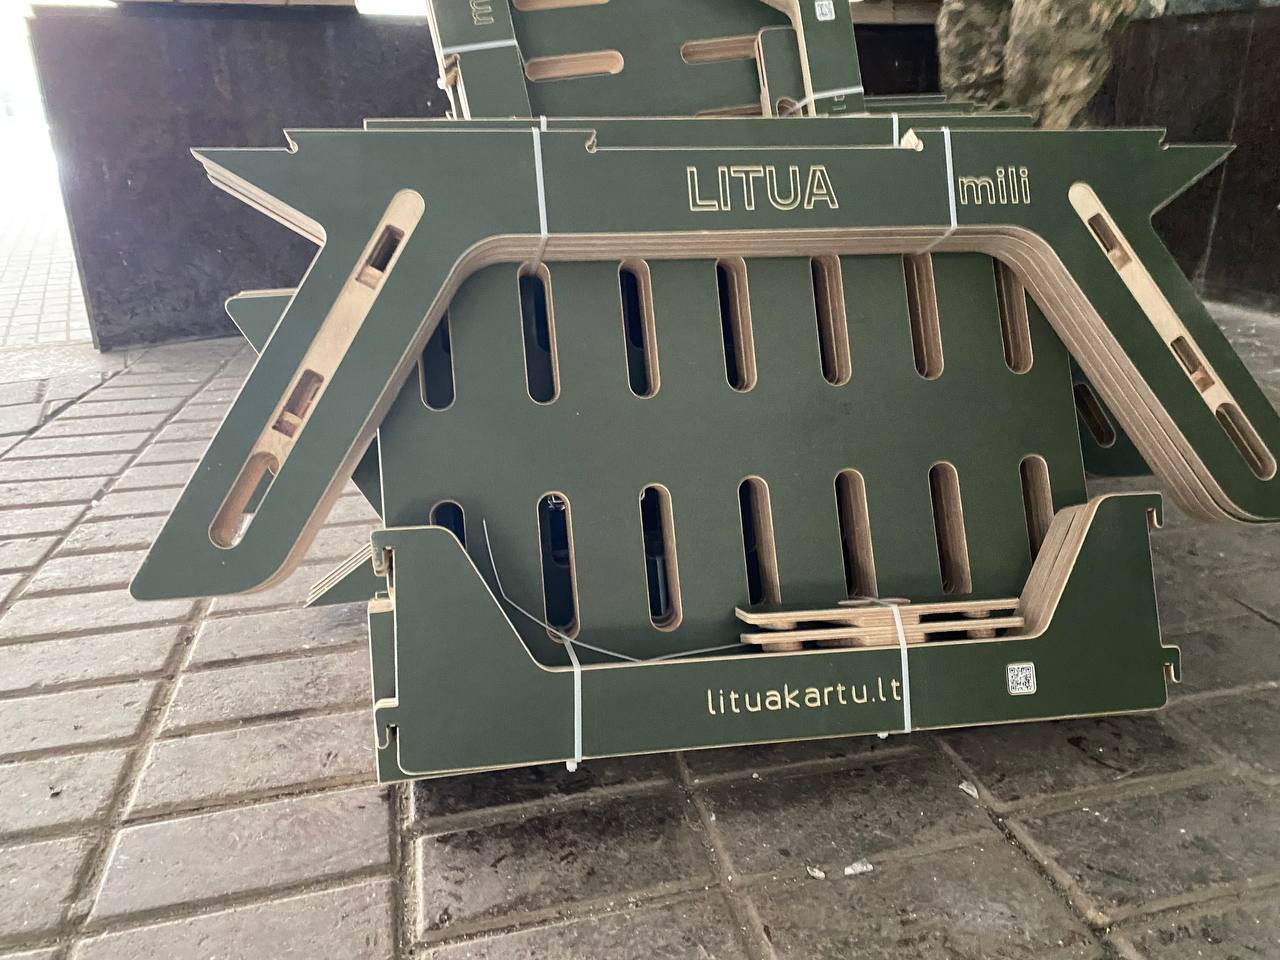 станцій київського метрополітену облаштували додатковими модульними лавами